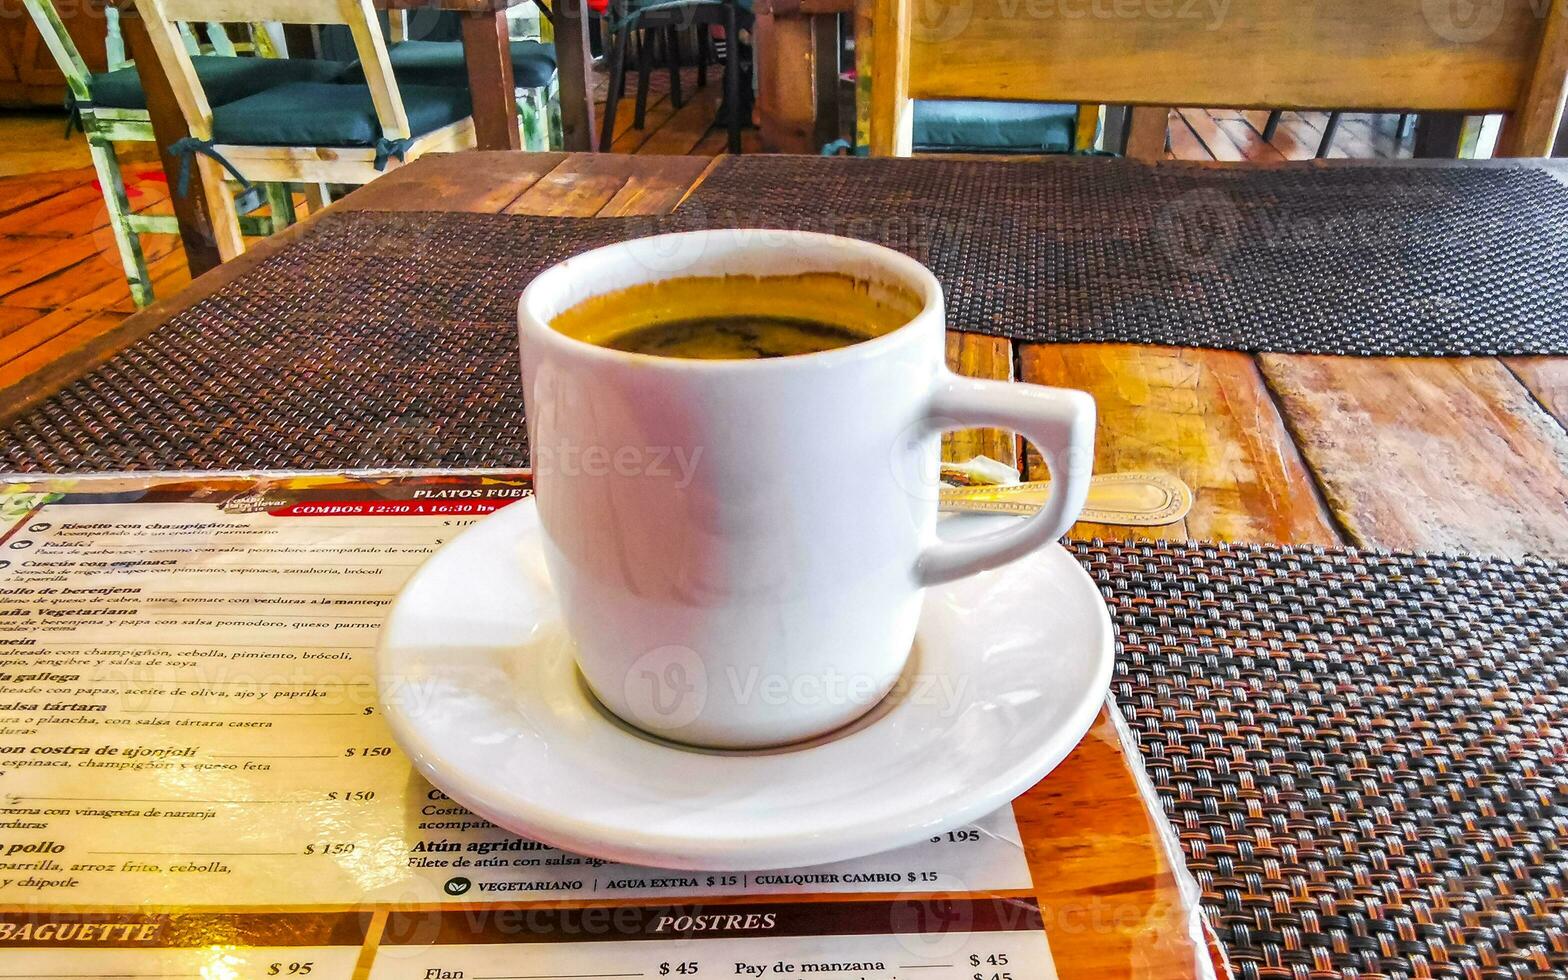 tasse de americano noir café dans restaurant café dans Mexique. photo